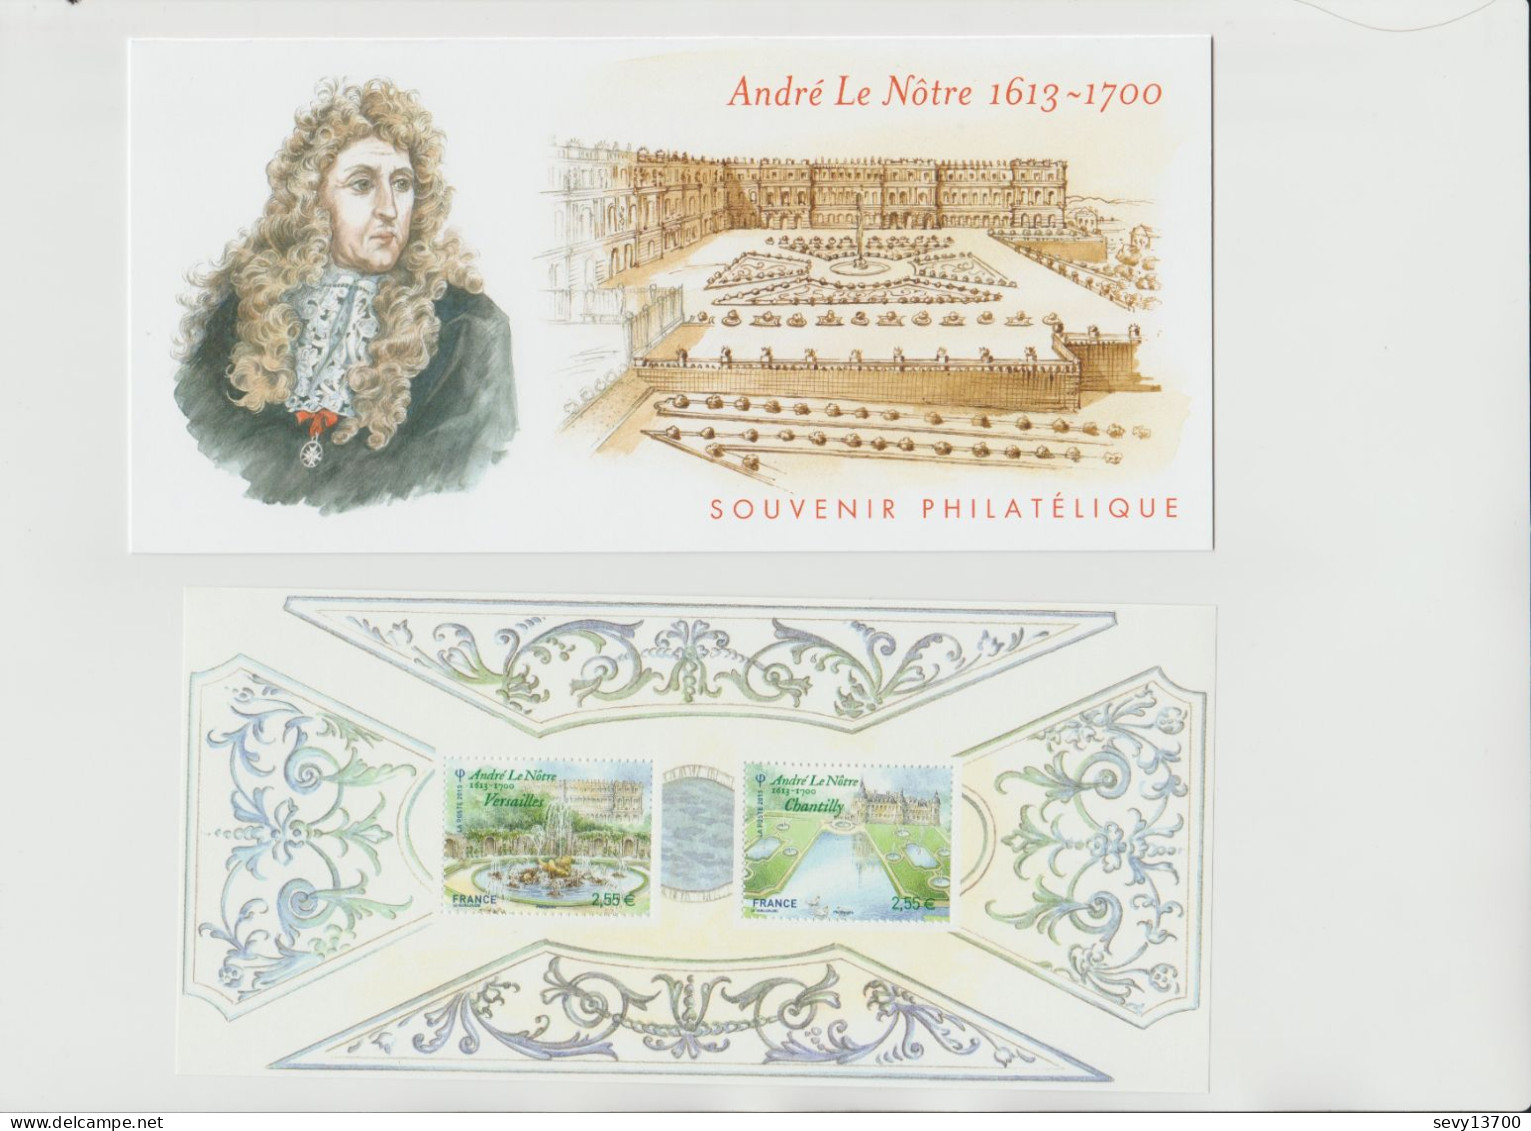 France 2013 Souvenir Philatélique Yvert Tellier N° 80 André Le Nôtre 1613 - 1700 - Foglietti Commemorativi